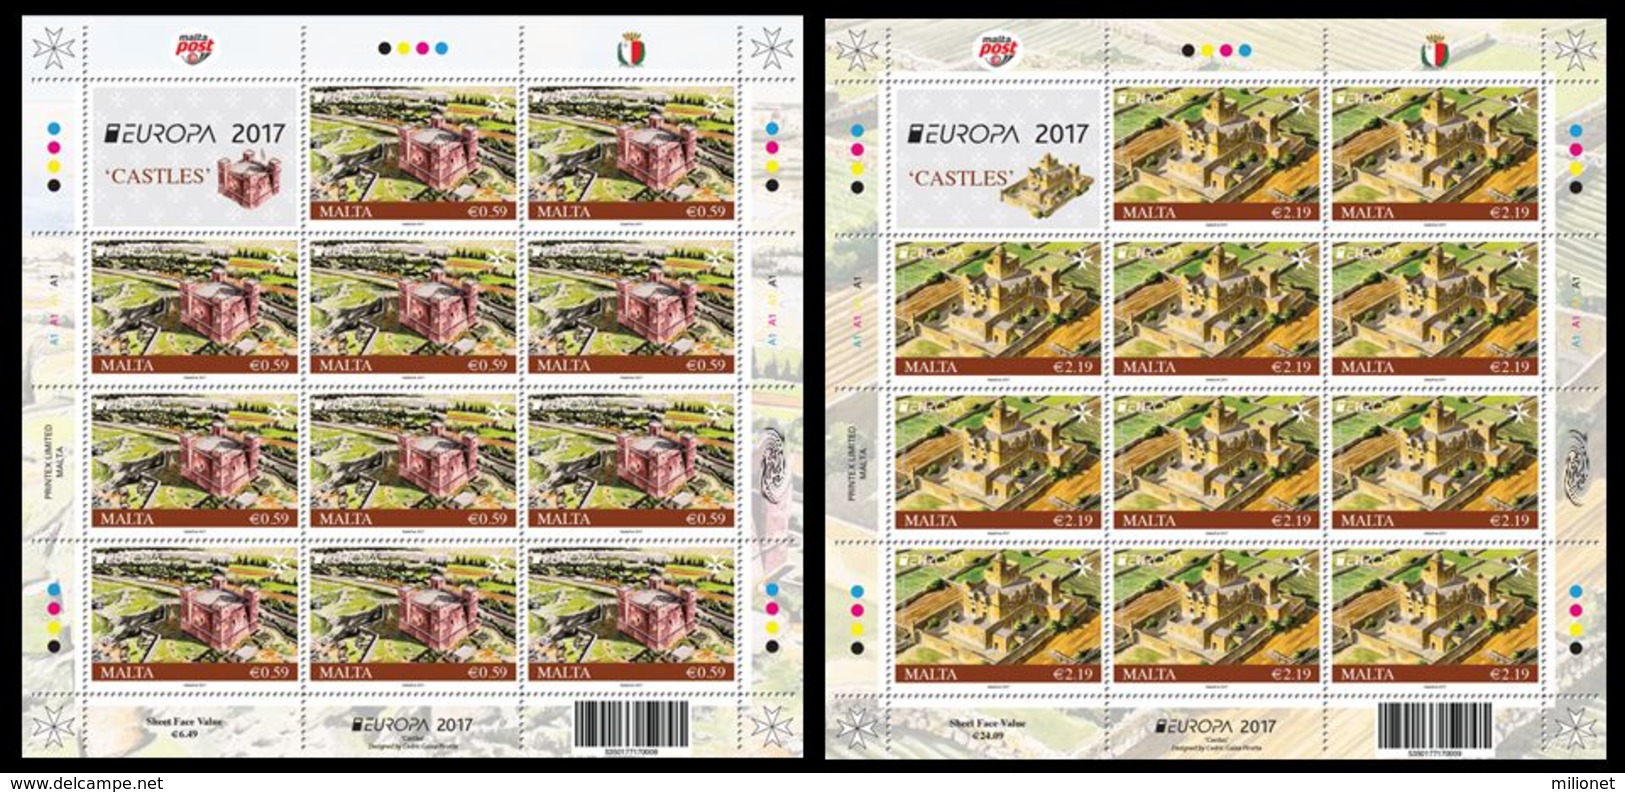 SALE!!! MALTA 2017 EUROPA CEPT CASTLES 2 Sheetlets Of 11 Stamps + 1 Vignette MNH ** - 2017